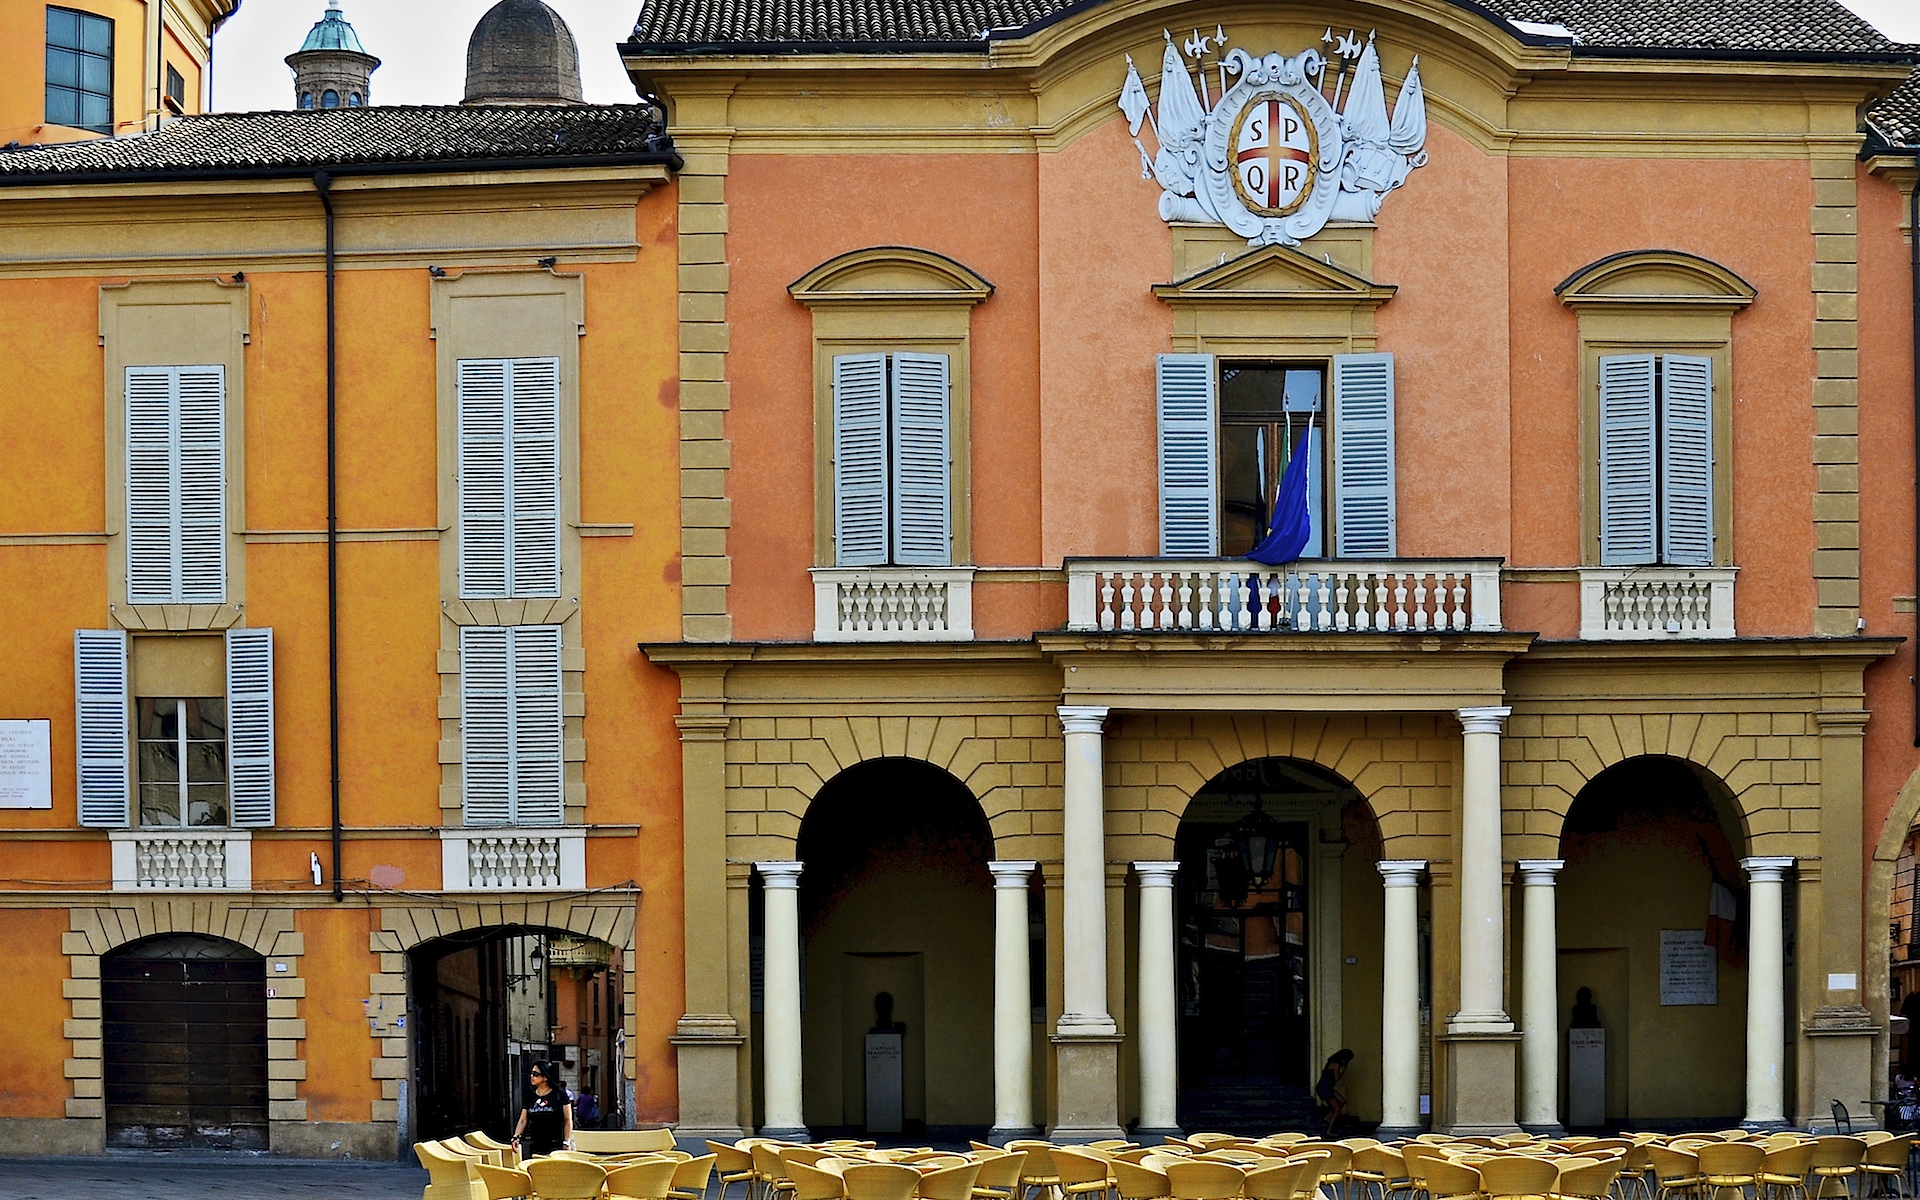 photo: https://upload.wikimedia.org/wikipedia/commons/2/28/Palazzo_sede_Municipale.jpg